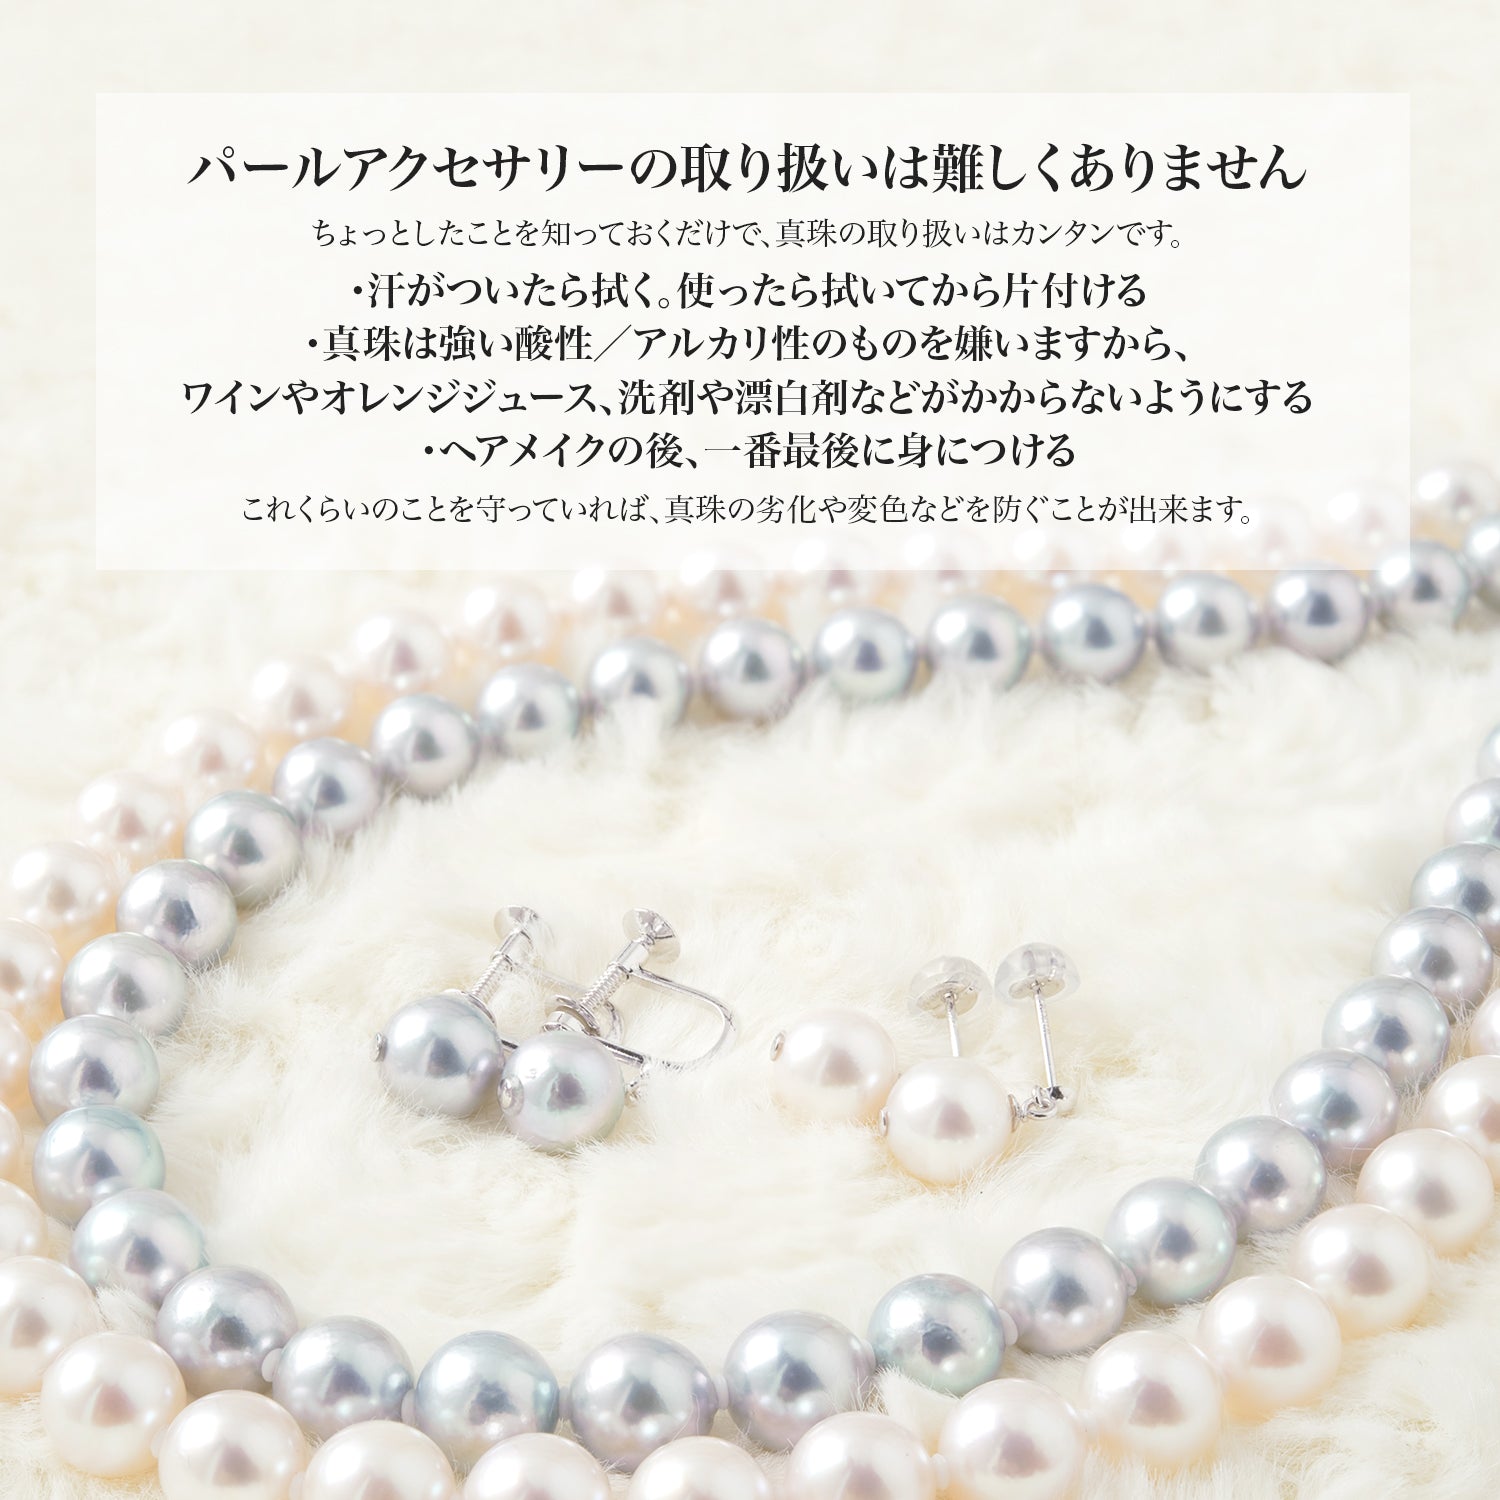 ゆうのパールコレクションあこや真珠 アコヤ グレー パール 本真珠ネックレス 7.5-8.0mm